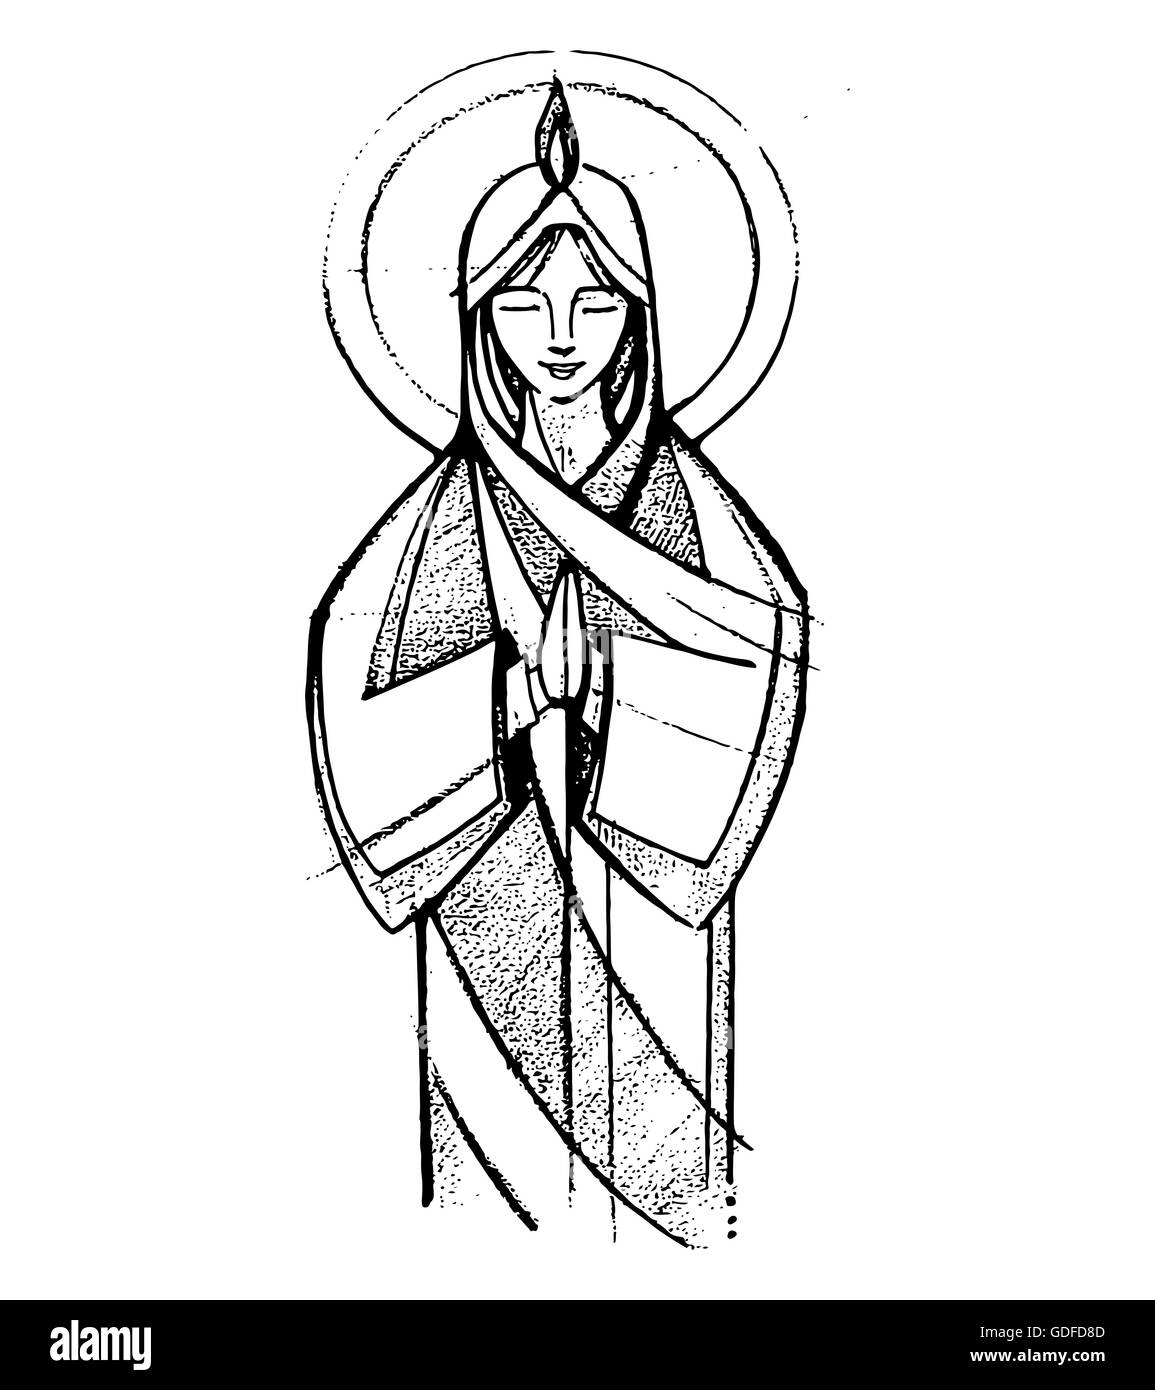 Disegnata a mano illustrazione vettoriale o di disegno della Vergine Maria a Pentecoste il passaggio biblico Foto Stock